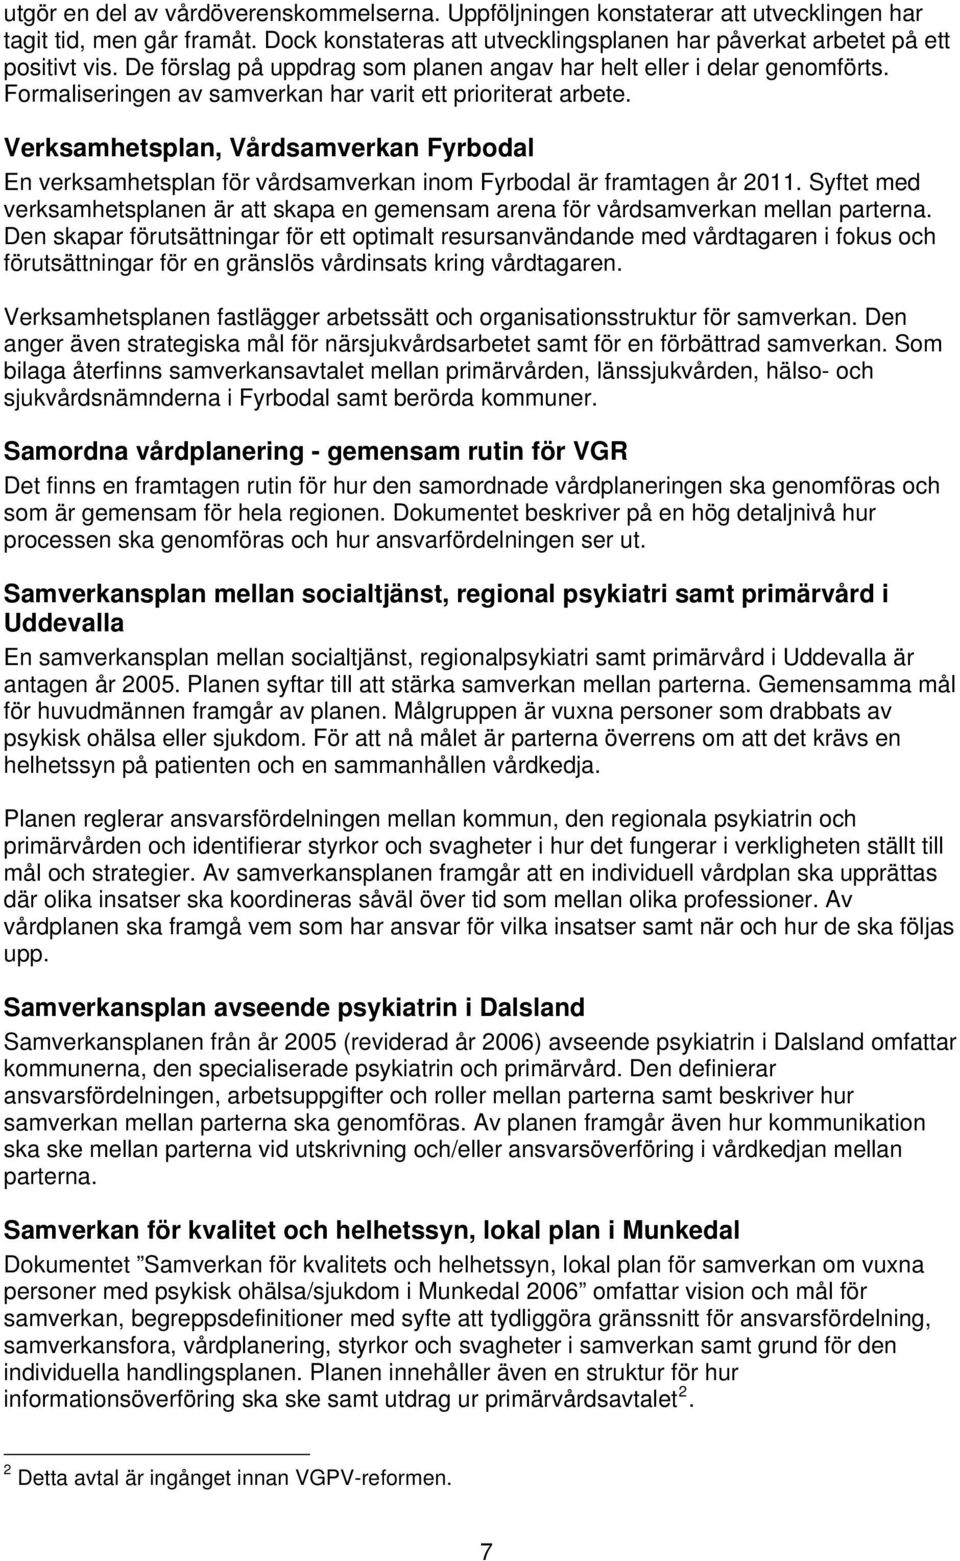 Verksamhetsplan, Vårdsamverkan Fyrbodal En verksamhetsplan för vårdsamverkan inom Fyrbodal är framtagen år 2011.